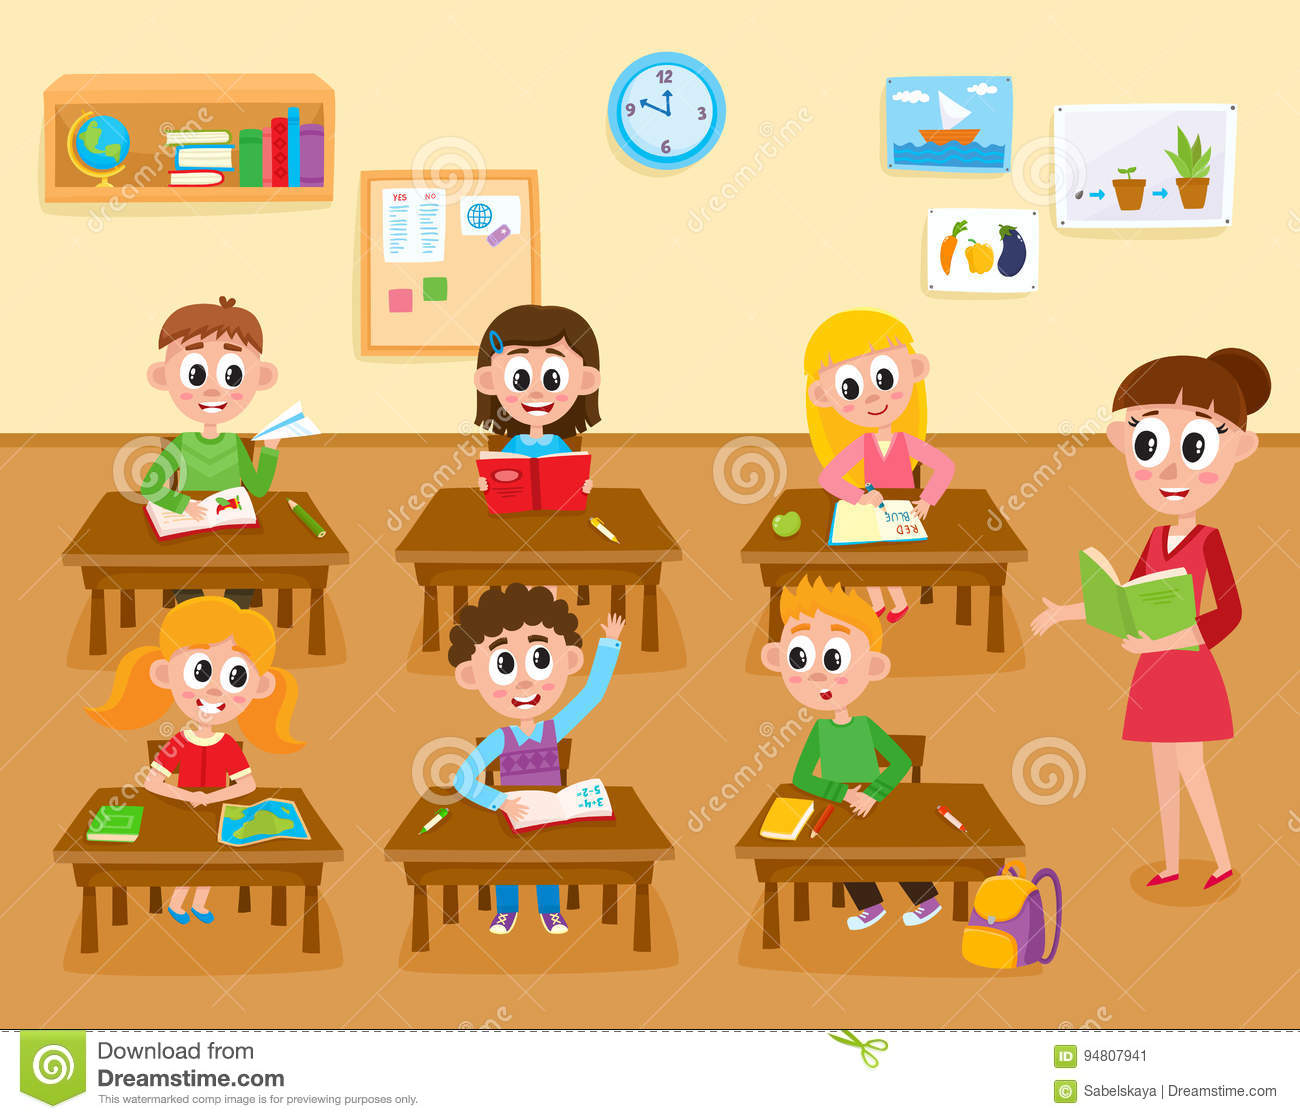 lezione-elementare-scuola-primaria-bambini-ed-insegnante-aula-94807941.jpg